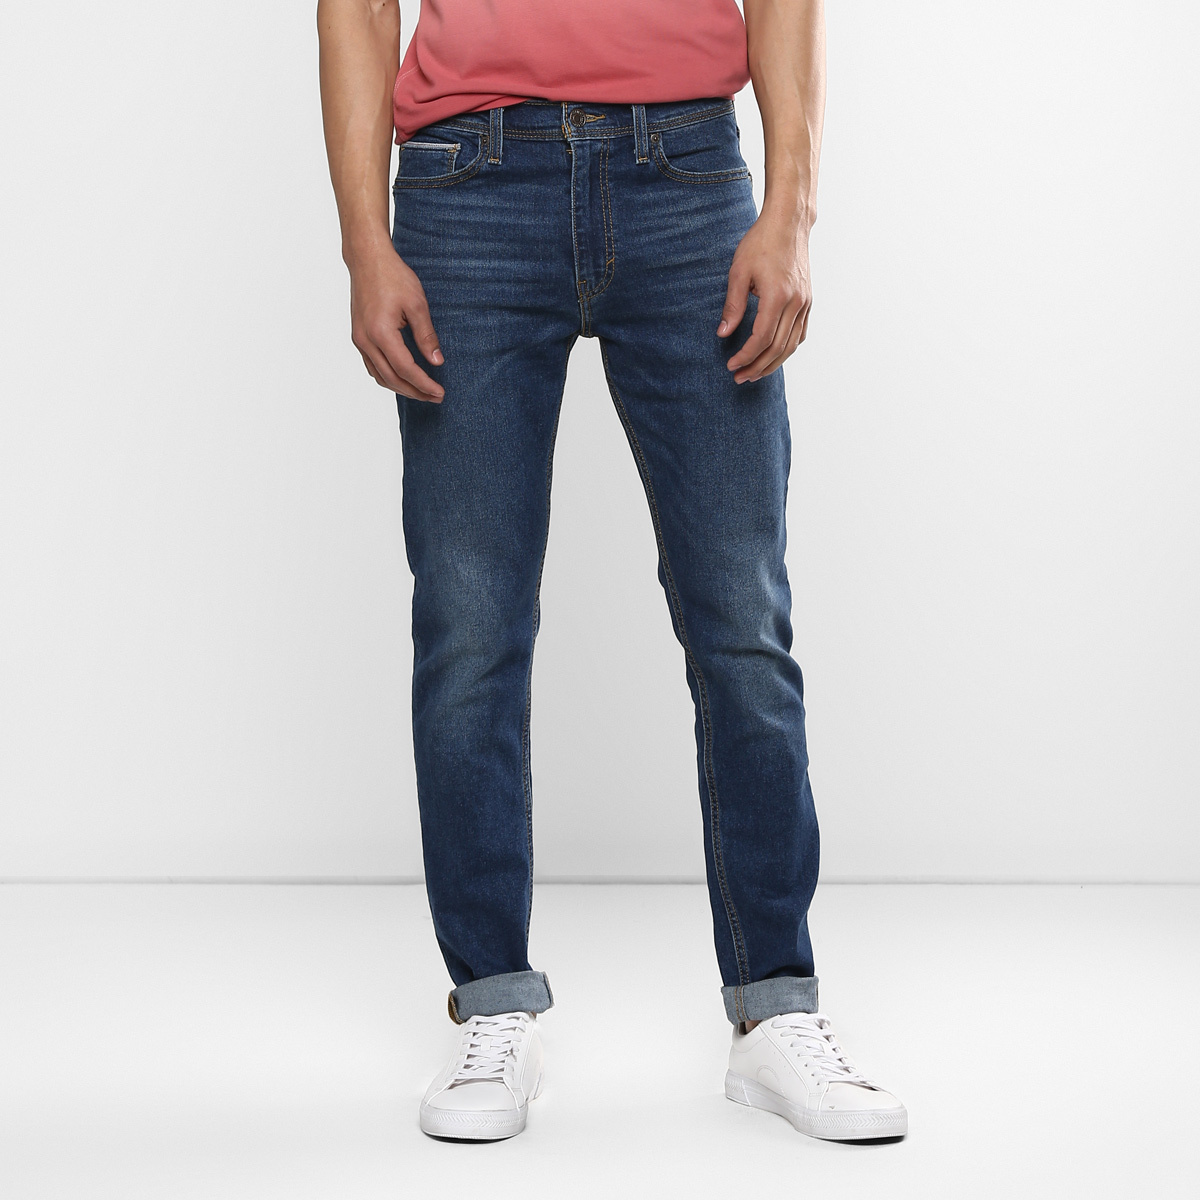 LEVIS MEN Single Length Jeans 86674-0001 Blue 38